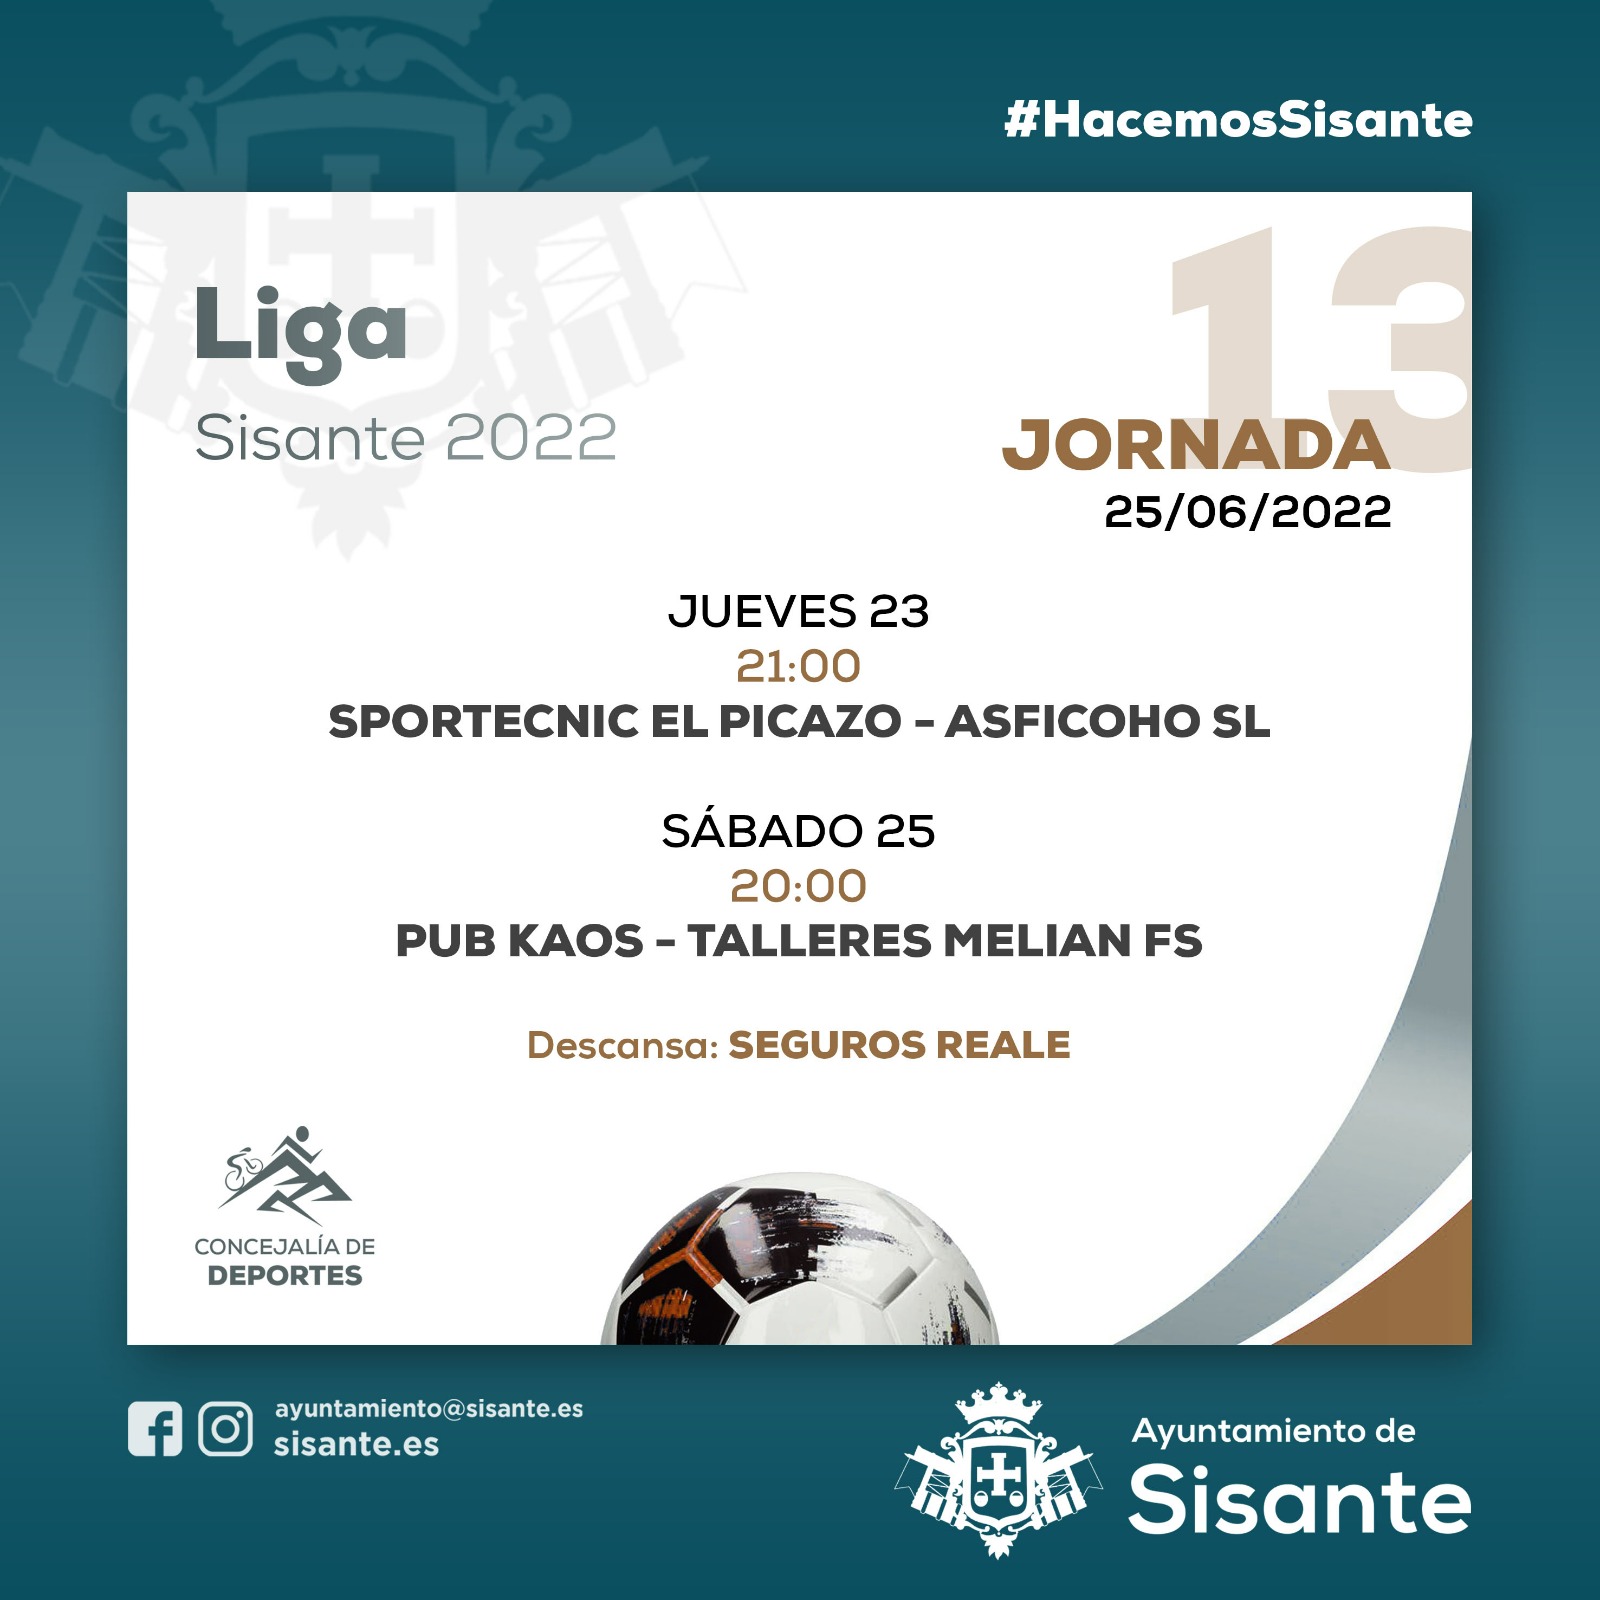 La Liga de de Sisante continúa décimotercera jornada - Excelentísimo Ayuntamiento de Sisante